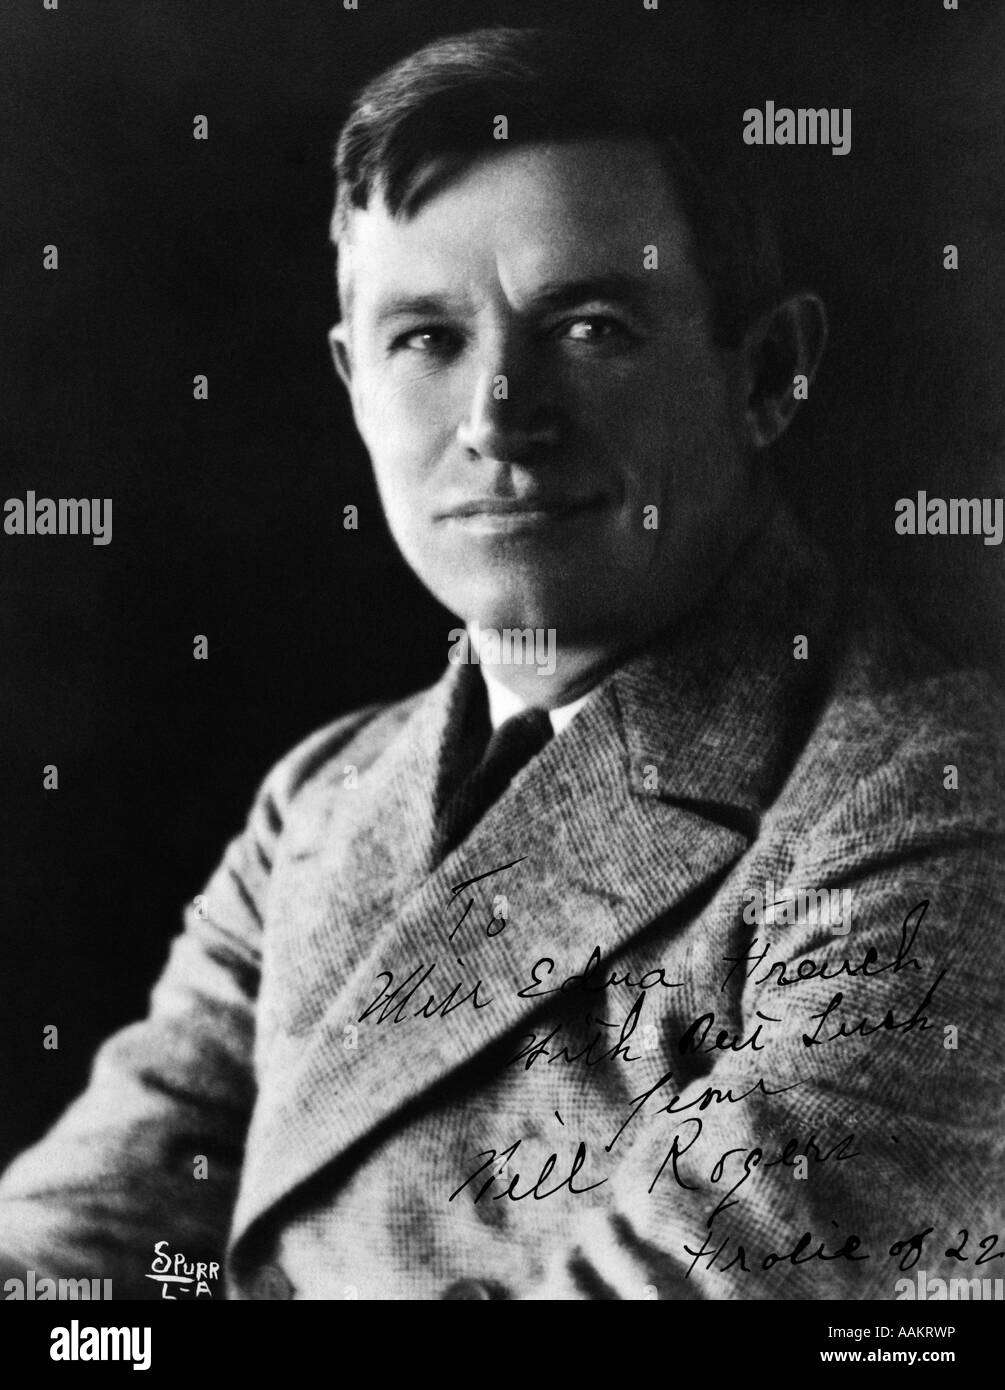 PORTRAIT DE L'acteur américain Will Rogers et humoriste paru dans ZIEGFIELD FOLLIES DANS LES ANNÉES 1920 AMERICANA COWBOY HÉROS 1879-1935 Banque D'Images